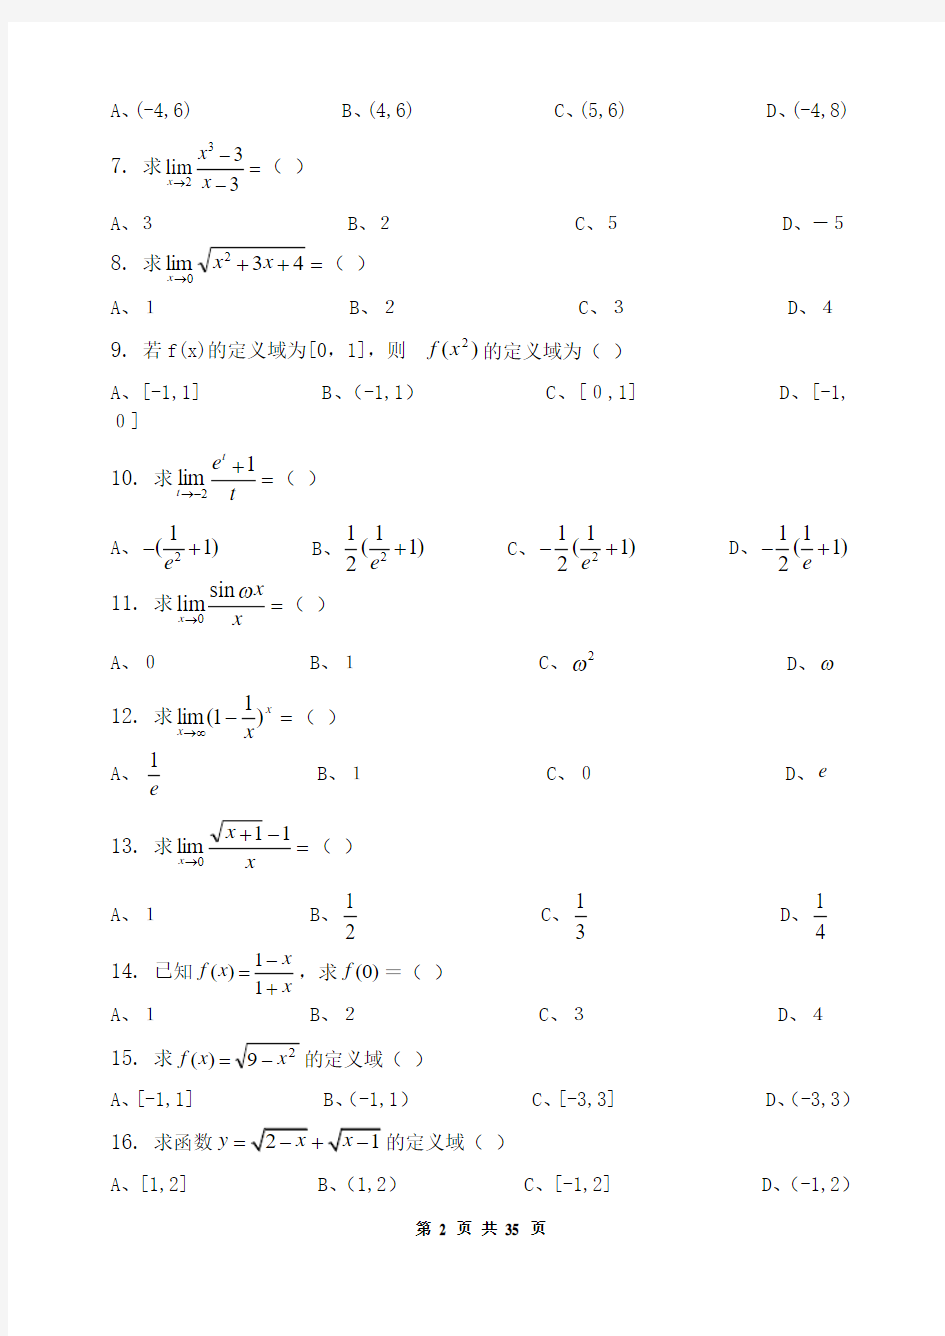 高等数学(经济数学1)_习题集(含答案)